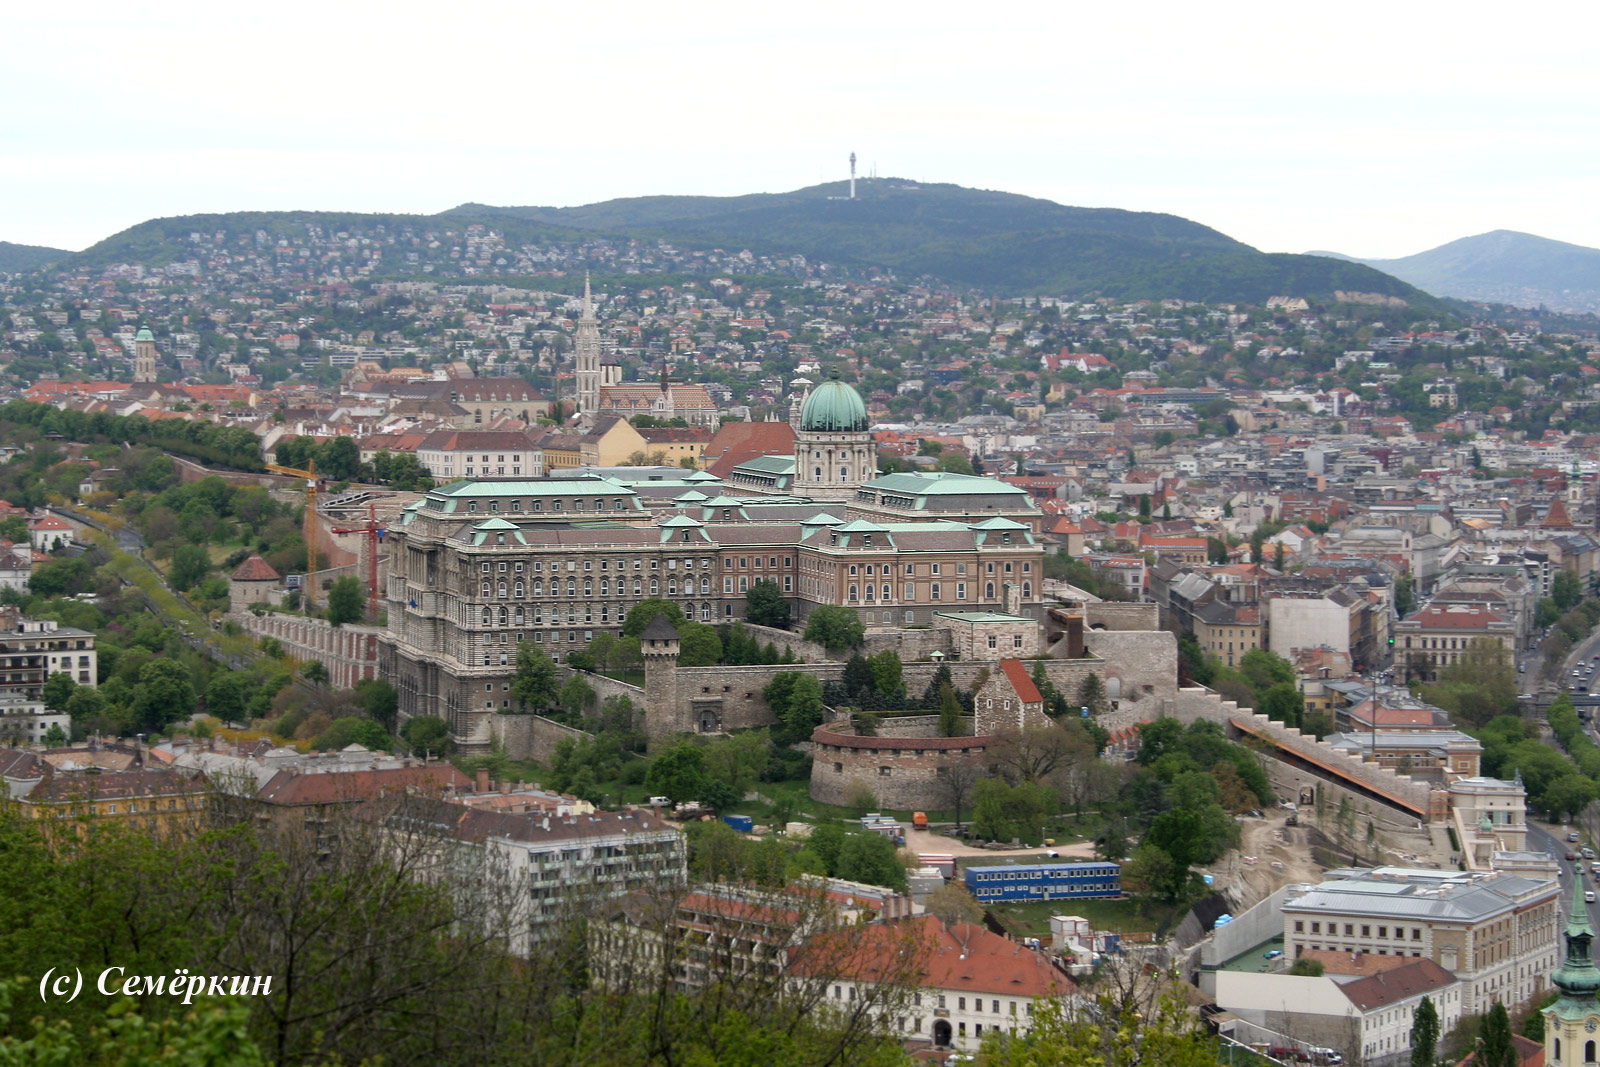 Будапешт, цитадель - вид на королевский дворец